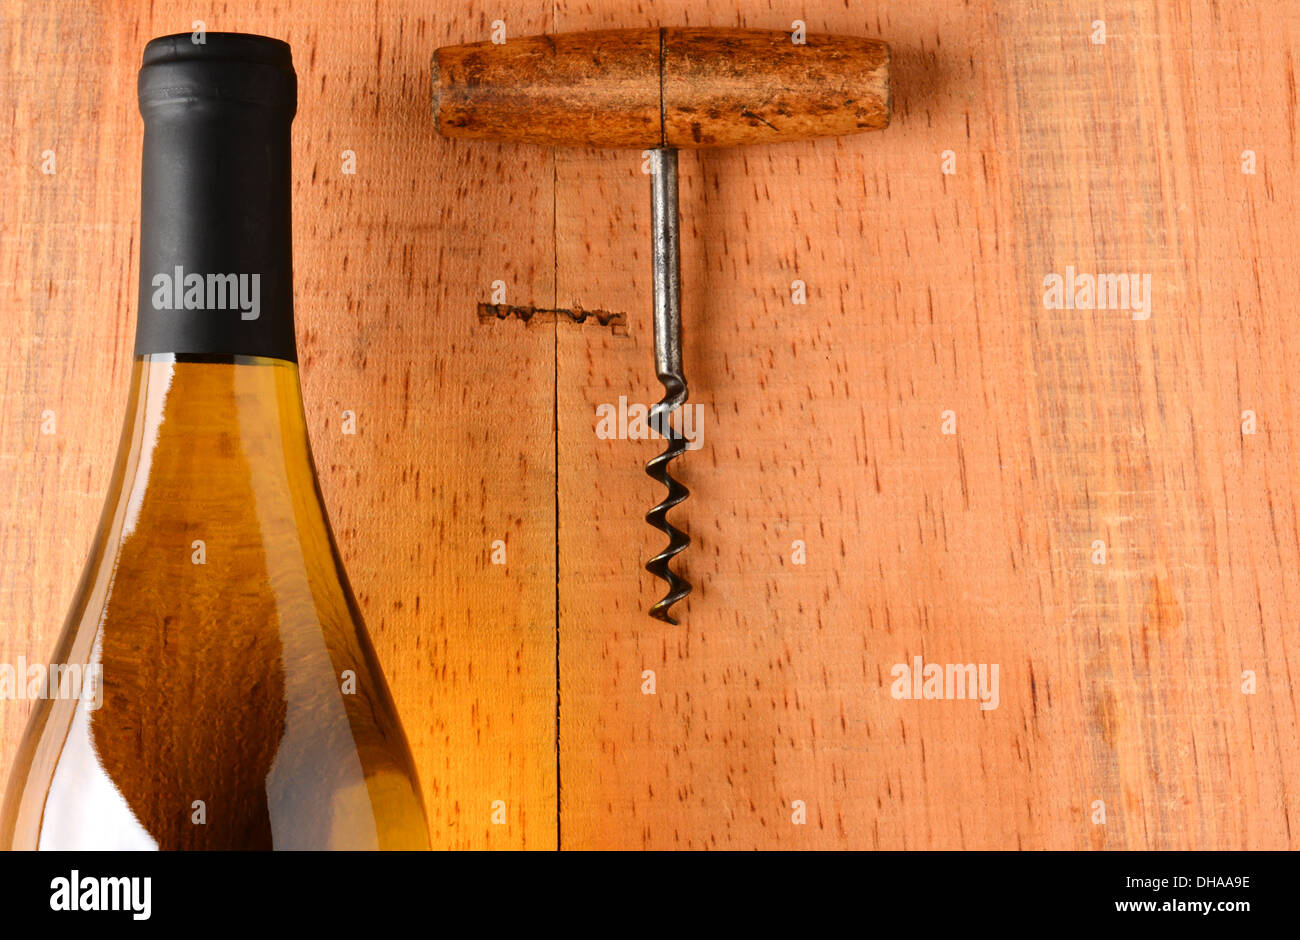 Nahaufnahme eines Chardonnay Wein Flasche und Korkenzieher auf rustikale Oberfläche des Holzes. Die Flasche hat keine Bezeichnung Stockfoto